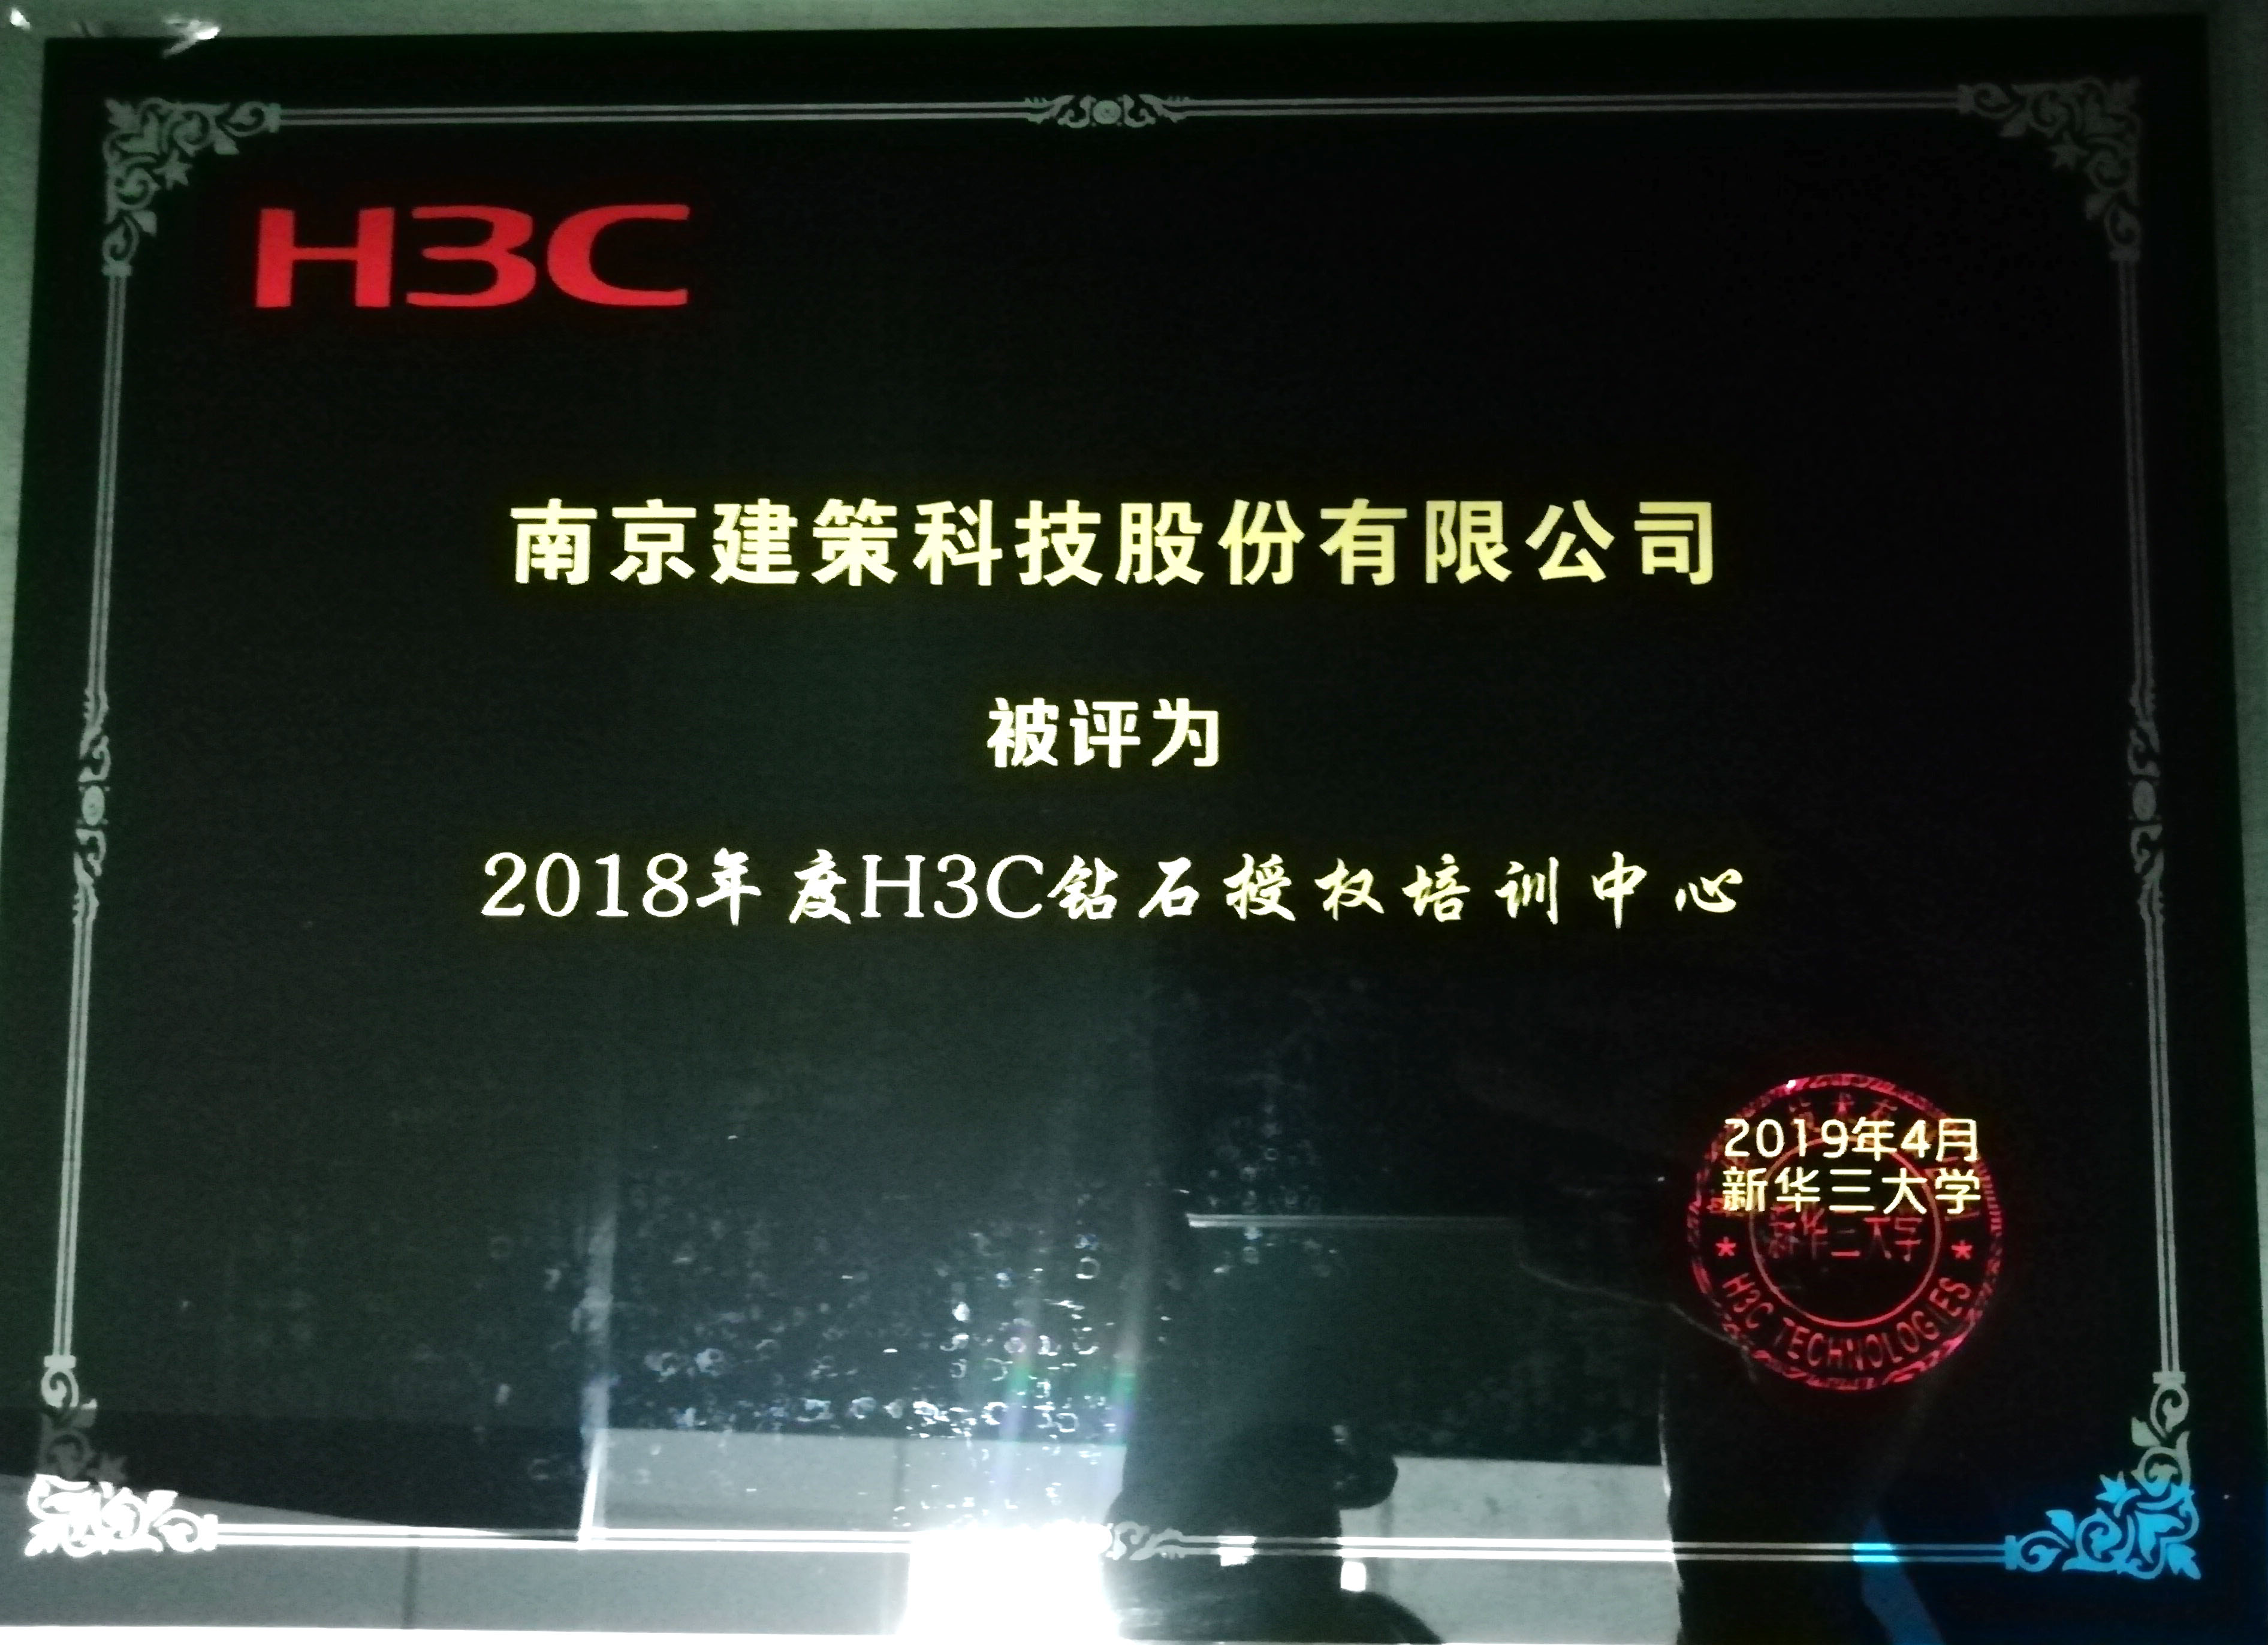 2018年度dafabet888黄金版备用网页所获H3C荣誉